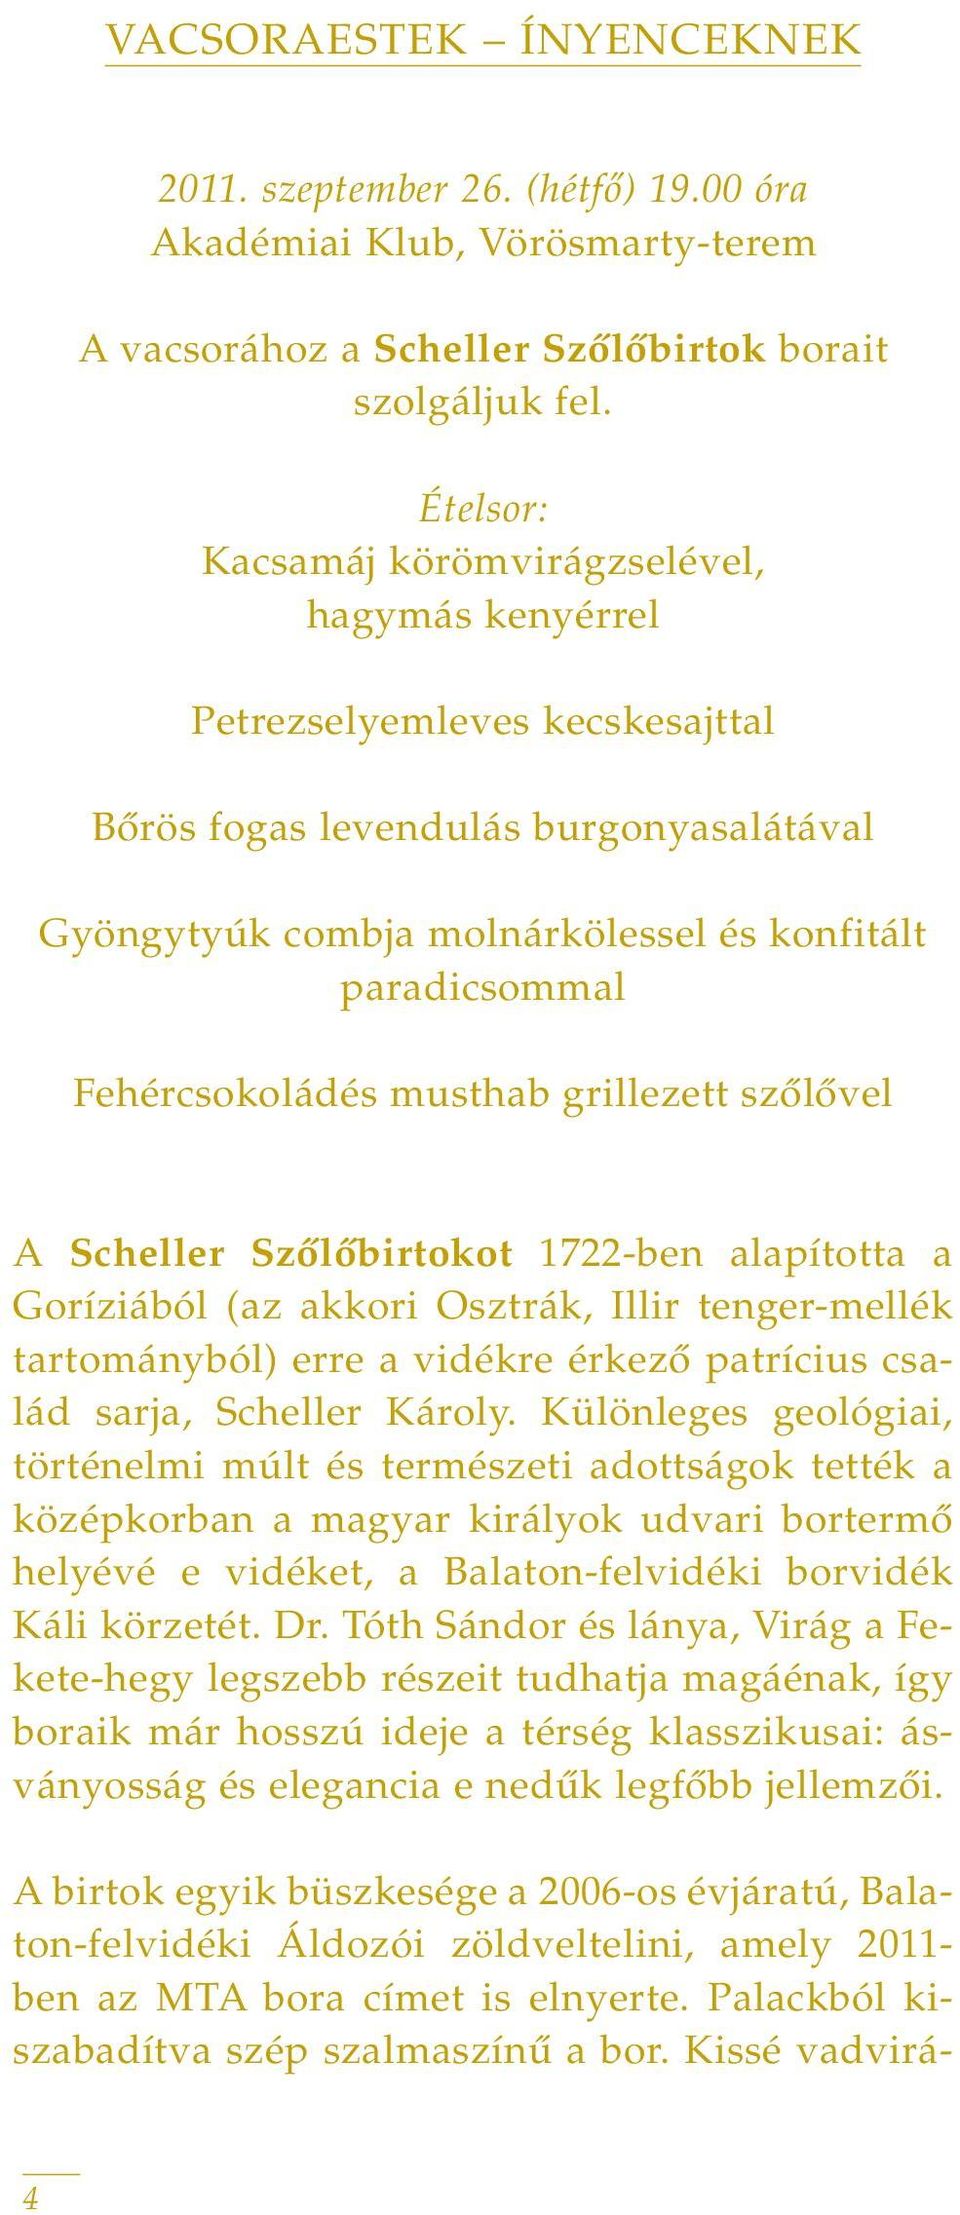 Fehércsokoládés musthab grillezett szôlôvel A Scheller Szôlôbirtokot 1722-ben alapította a Goríziából (az akkori Osztrák, Illir tenger-mellék tartományból) erre a vidékre érkezô patrícius család